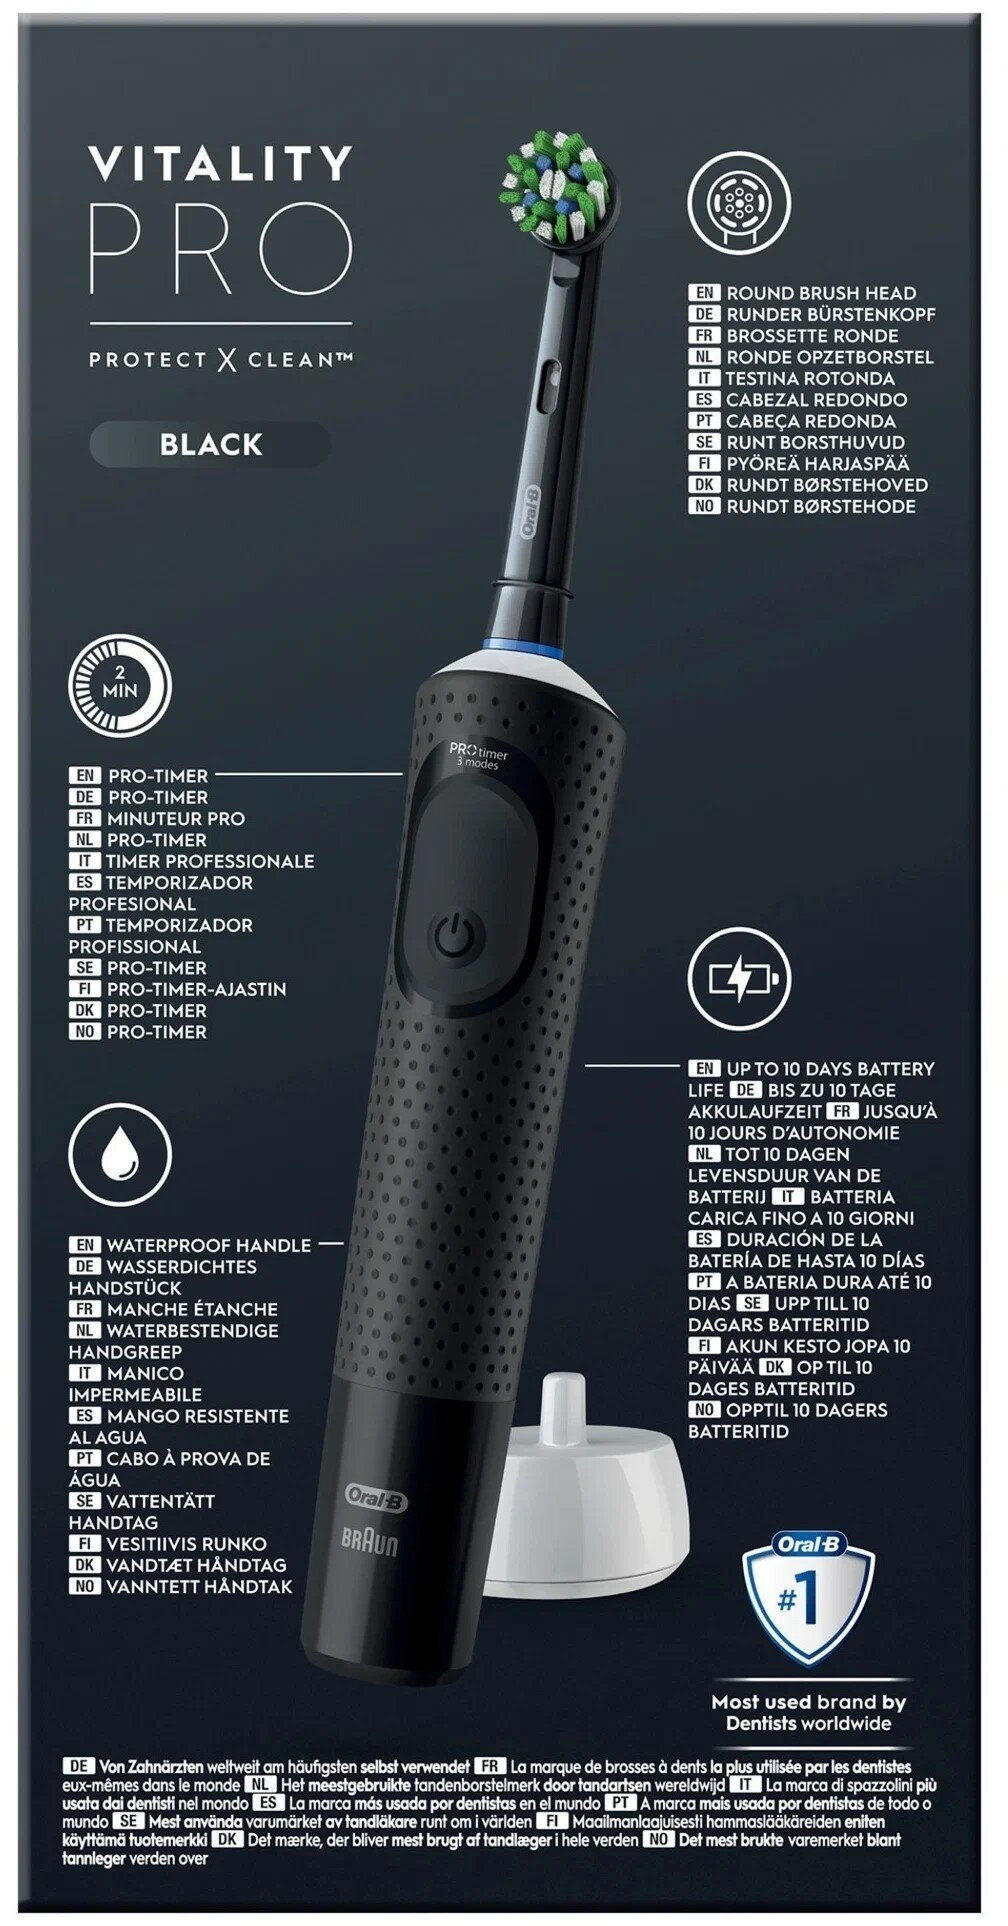 Электрическая зубная щётка Oral-B Vitality Pro для бережной чистки, Чёрная, 1 шт, Оригинальная